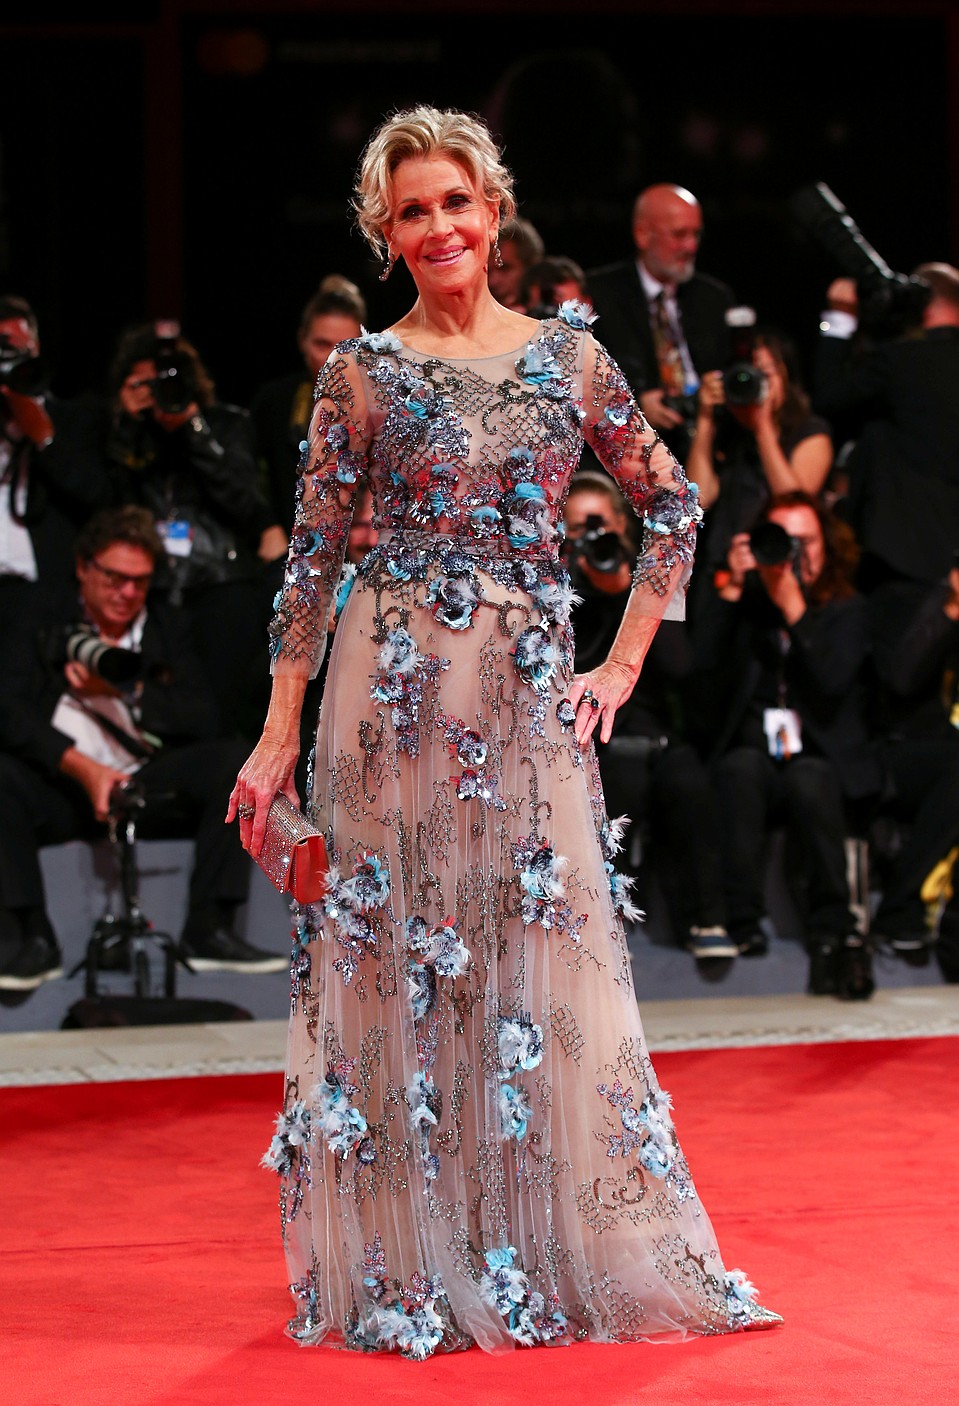 Джейн Фонда в этот вечер была великолепна: актриса вышла на сцену в платье из прозрачного шифона телесного цвета. Фото: REUTERS